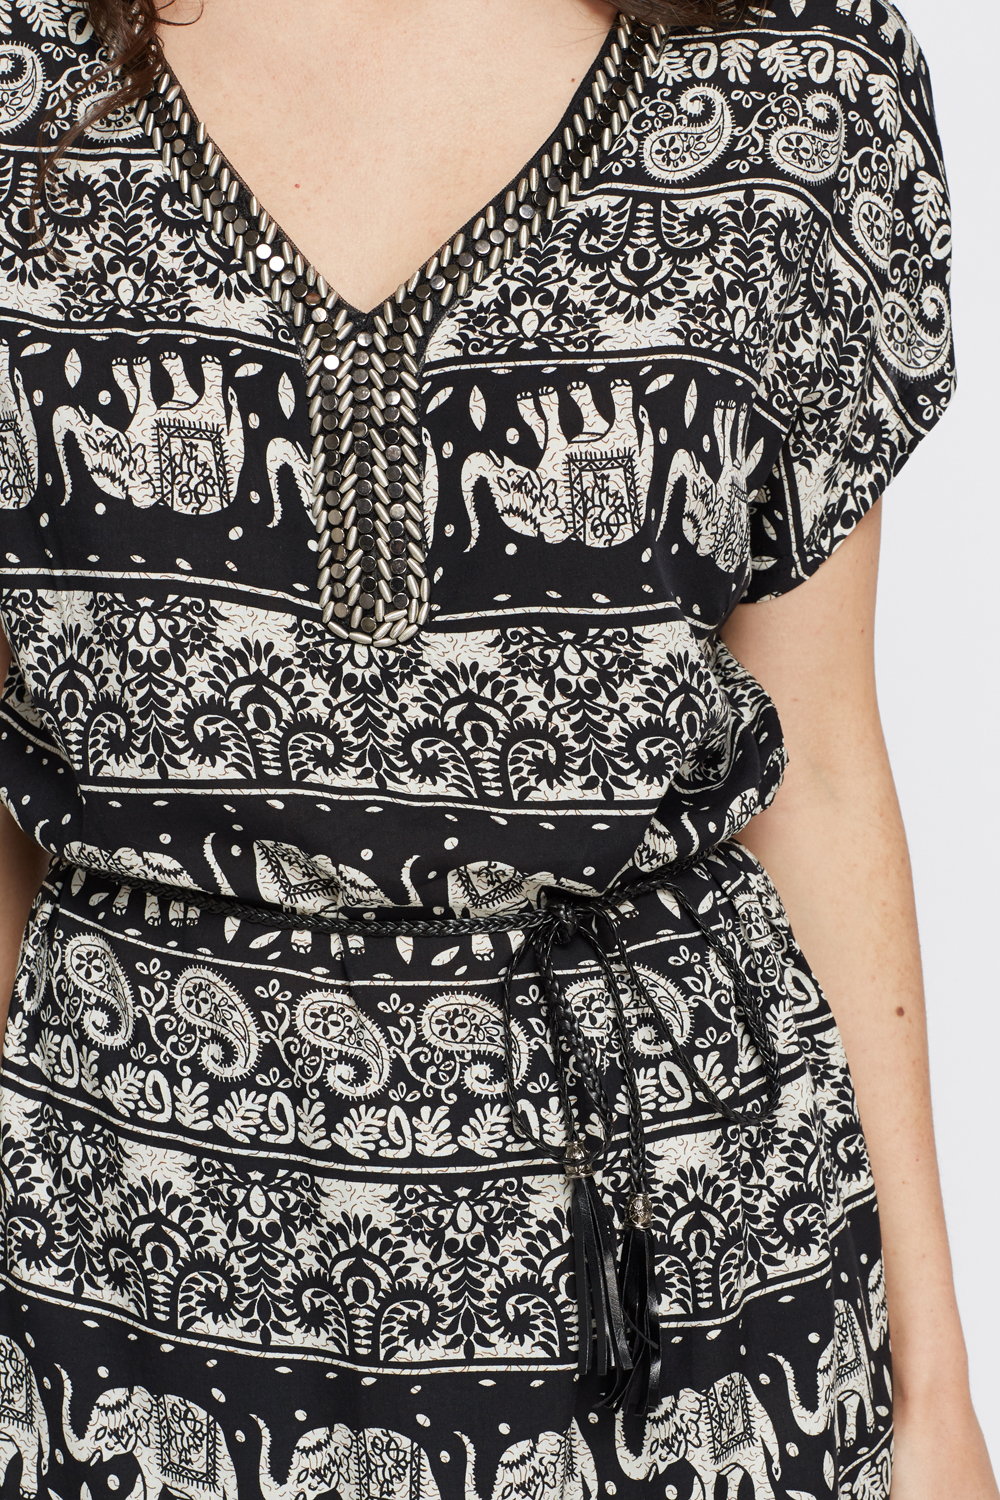 Embellished Neck Elephant Print Tunic Dress - Just $7